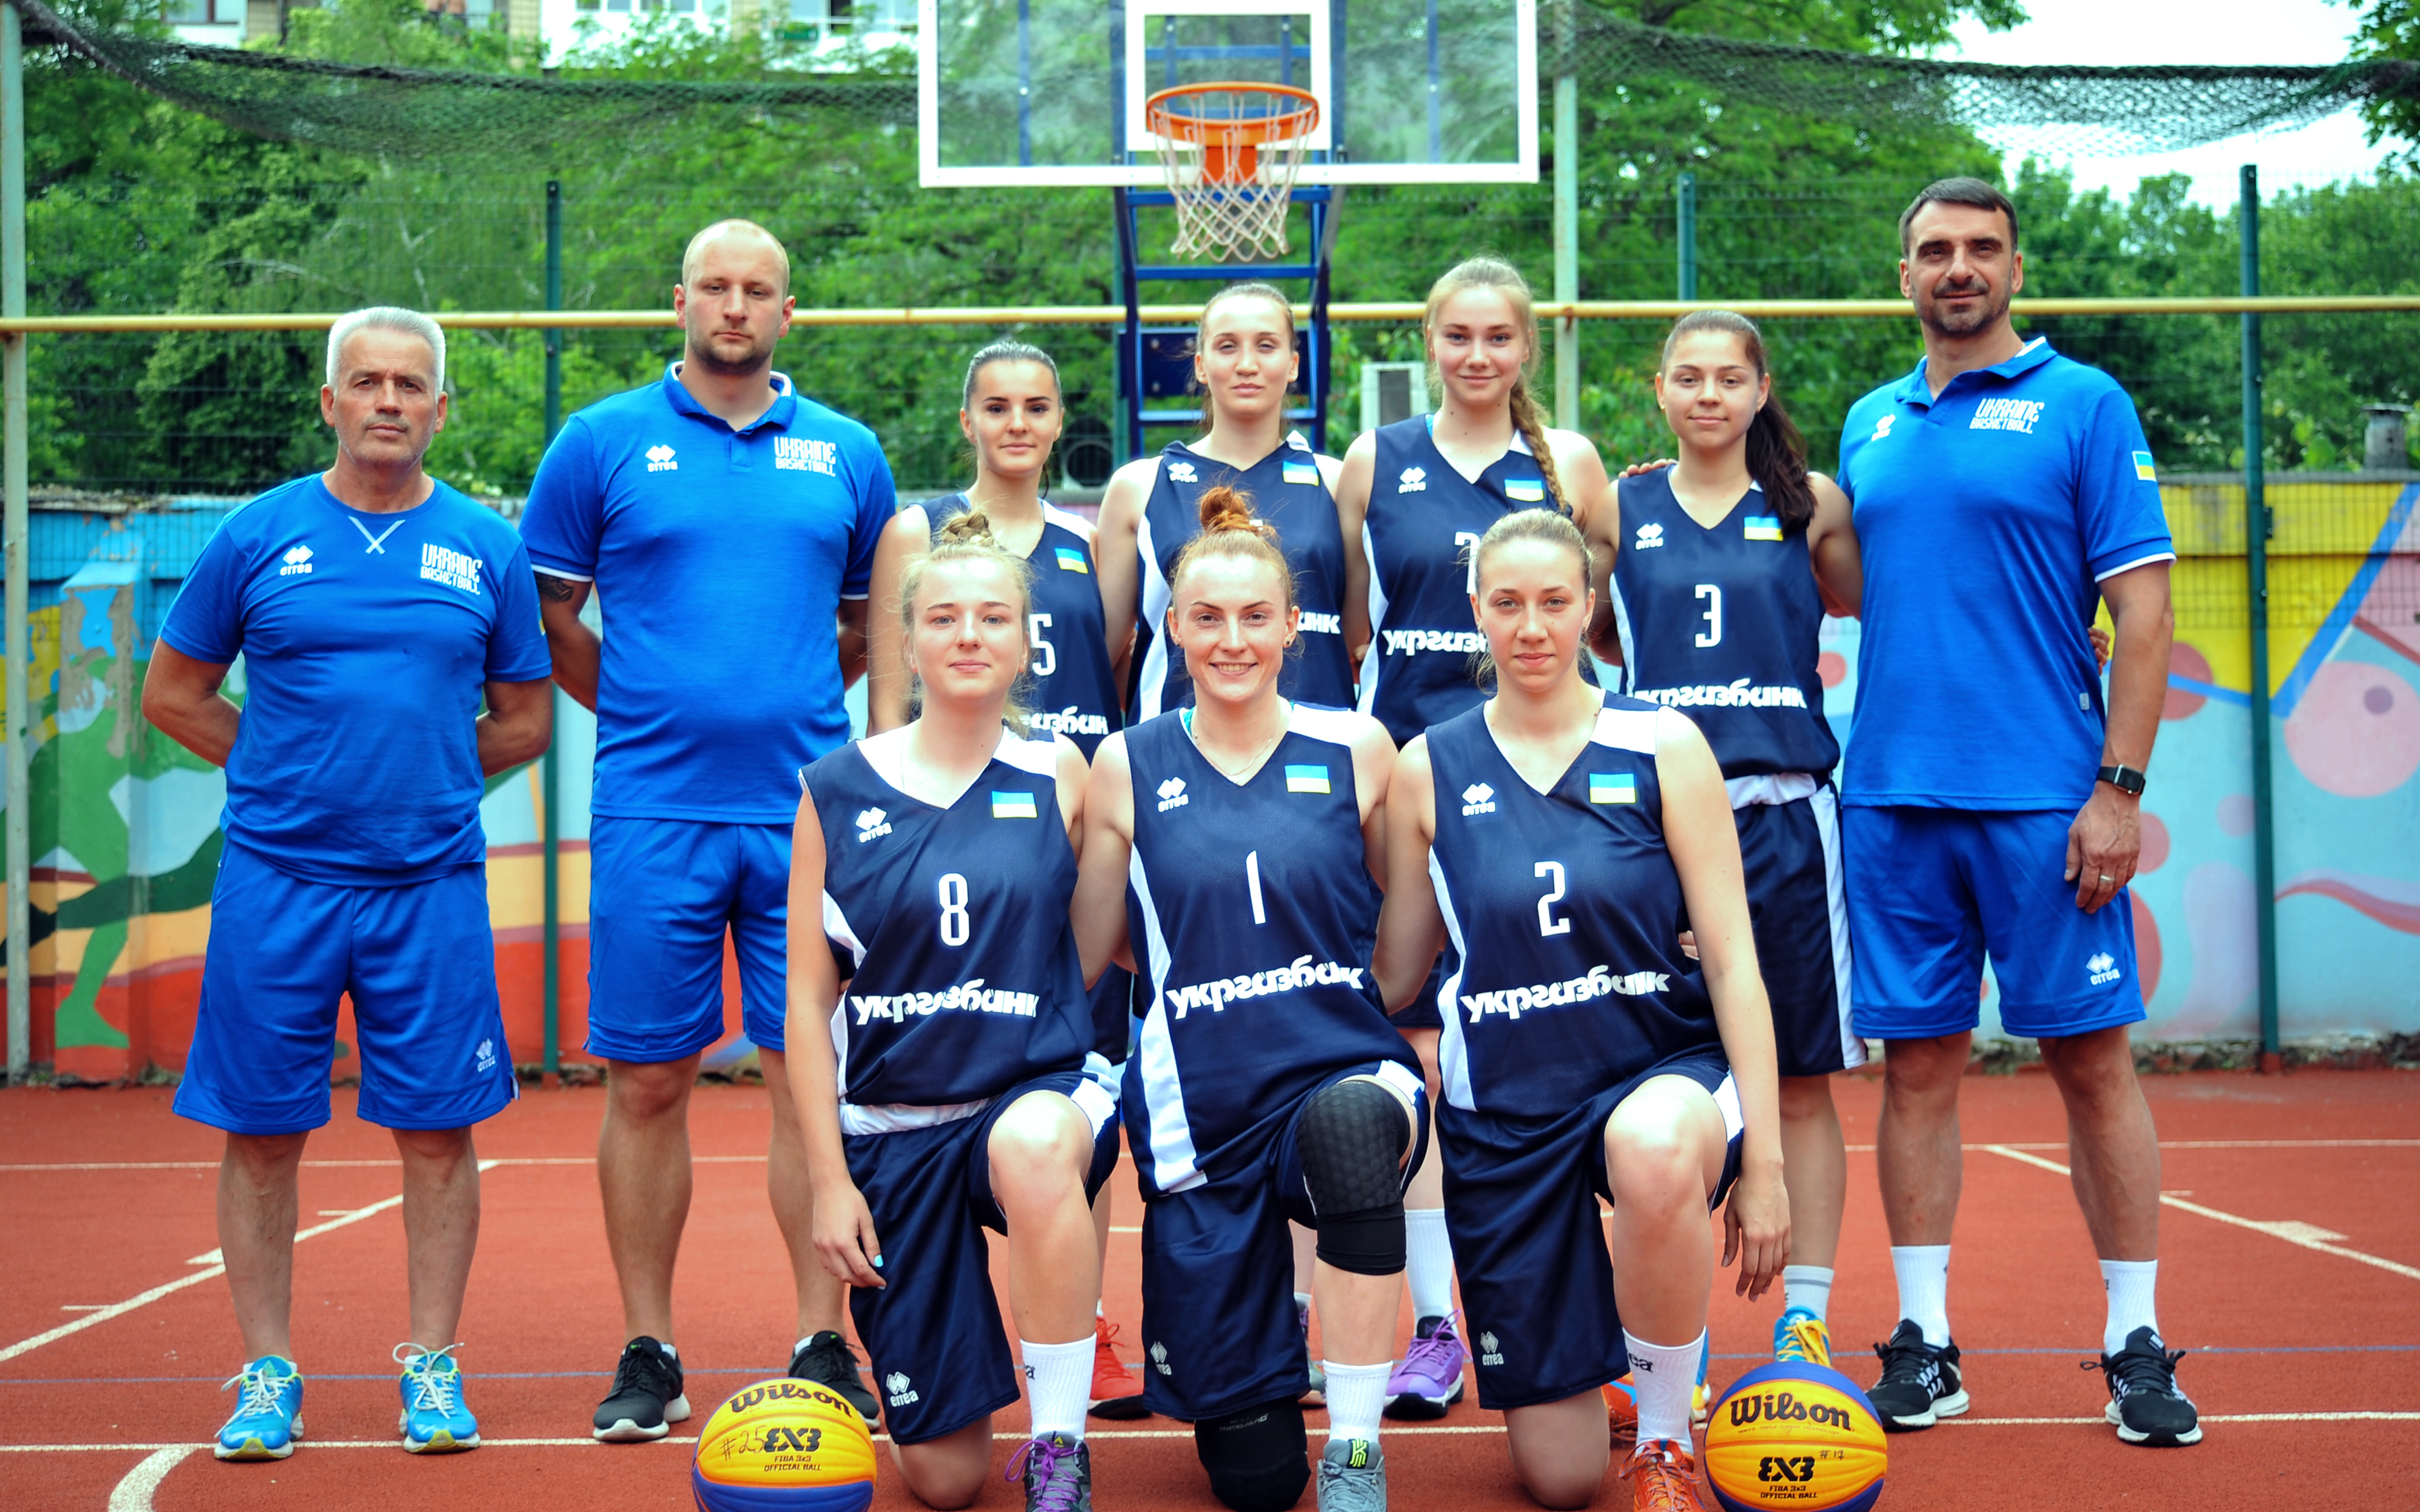 Дві збірні України візьмуть участь у молодіжному чемпіонаті світу з баскетболу 3х3